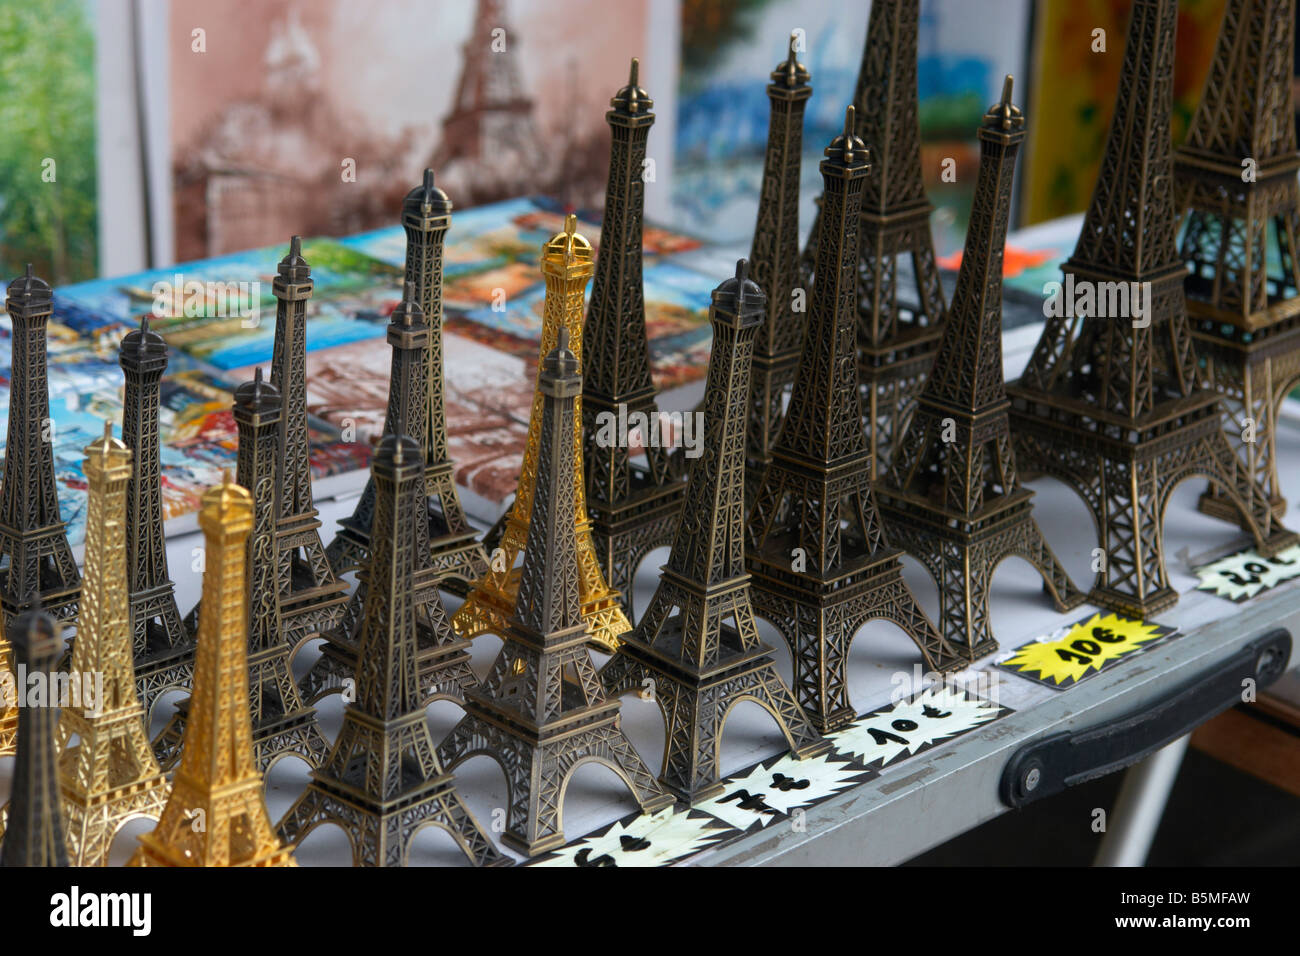 Eiffel Tower souvenirs on sale at Left Bank Paris France Stock Photo